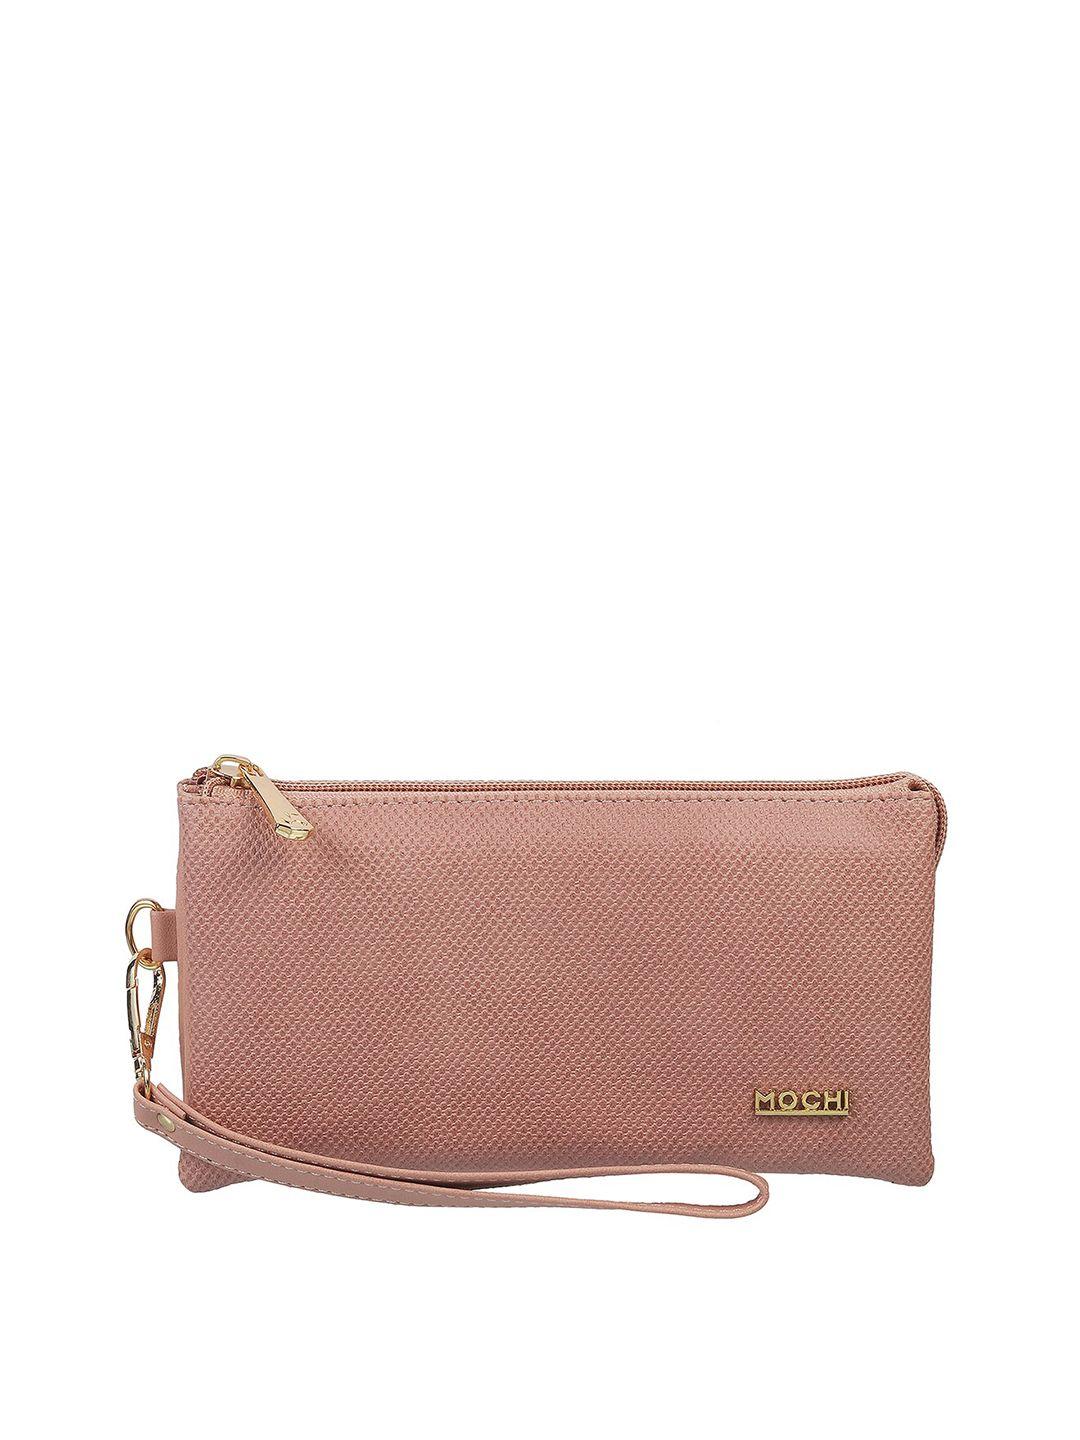 mochi-peach-coloured-purse-clutch